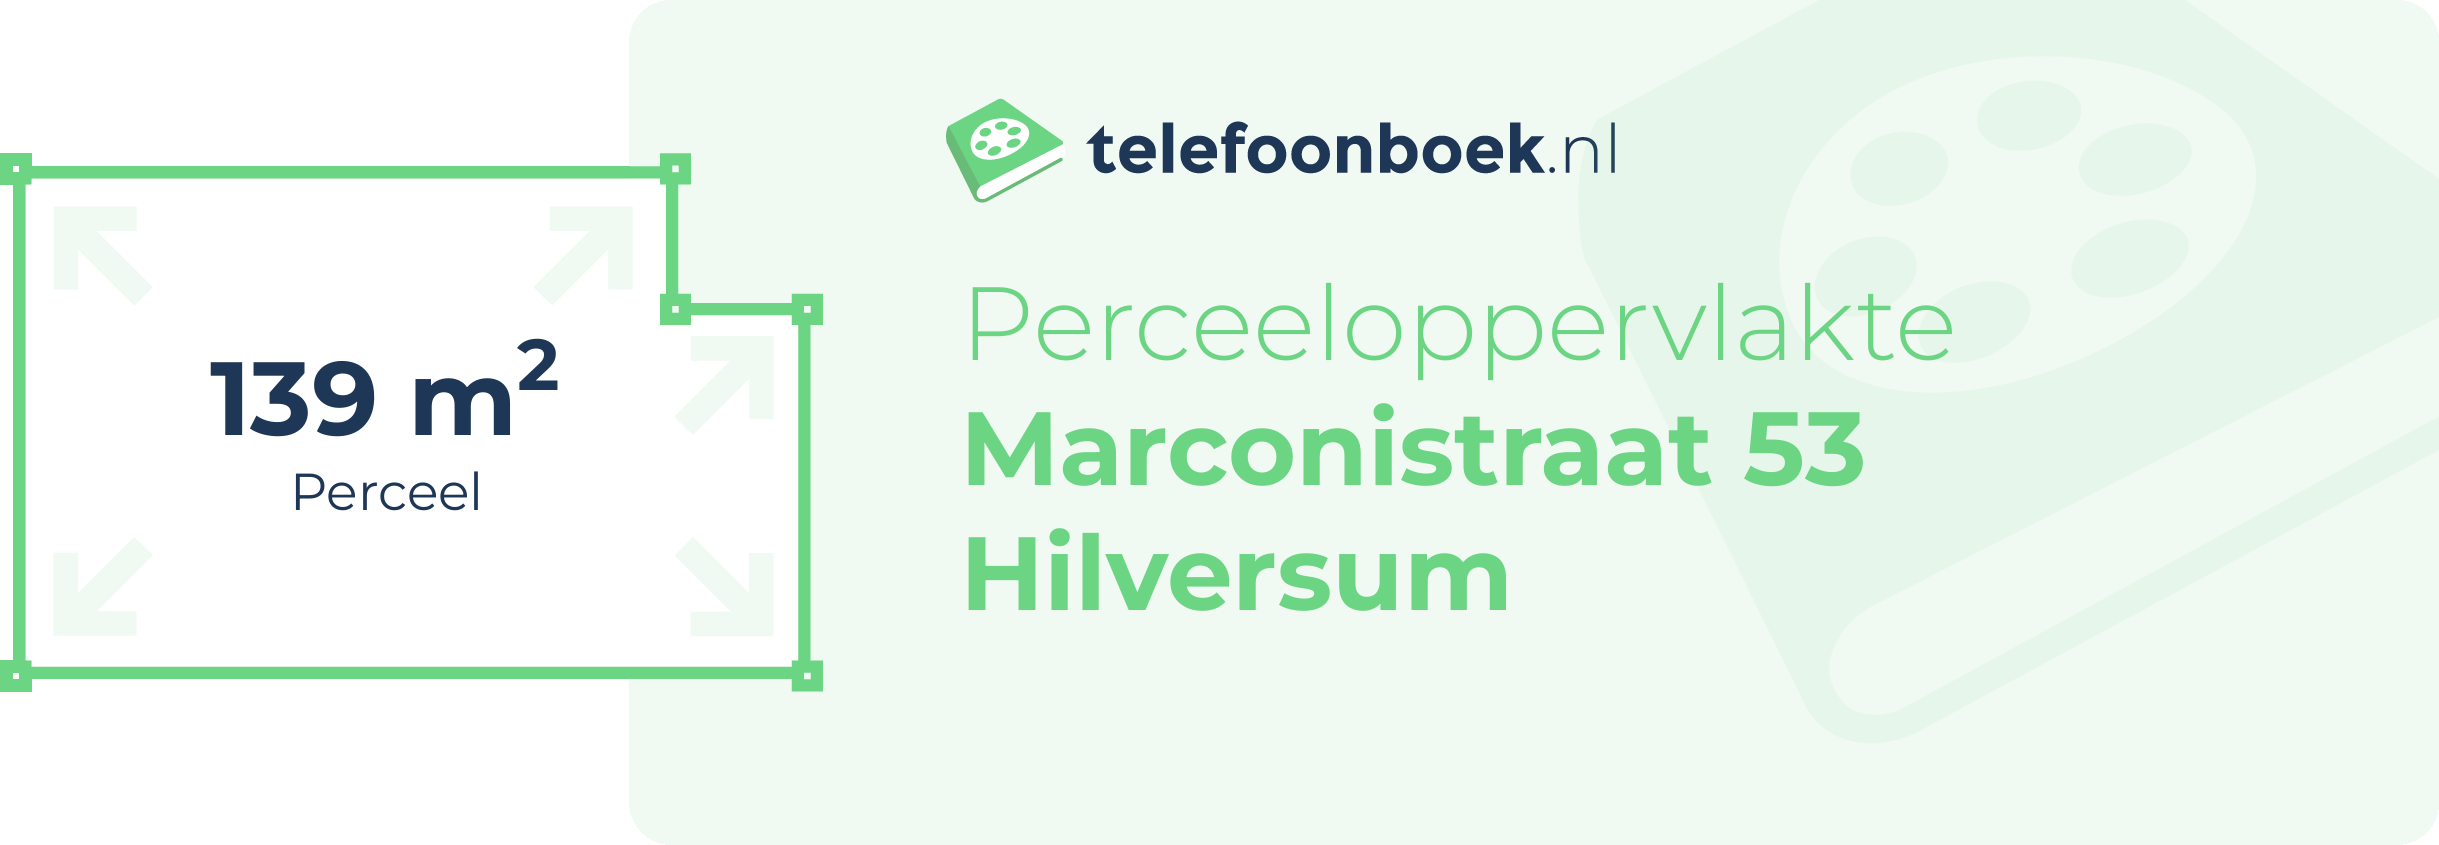 Perceeloppervlakte Marconistraat 53 Hilversum